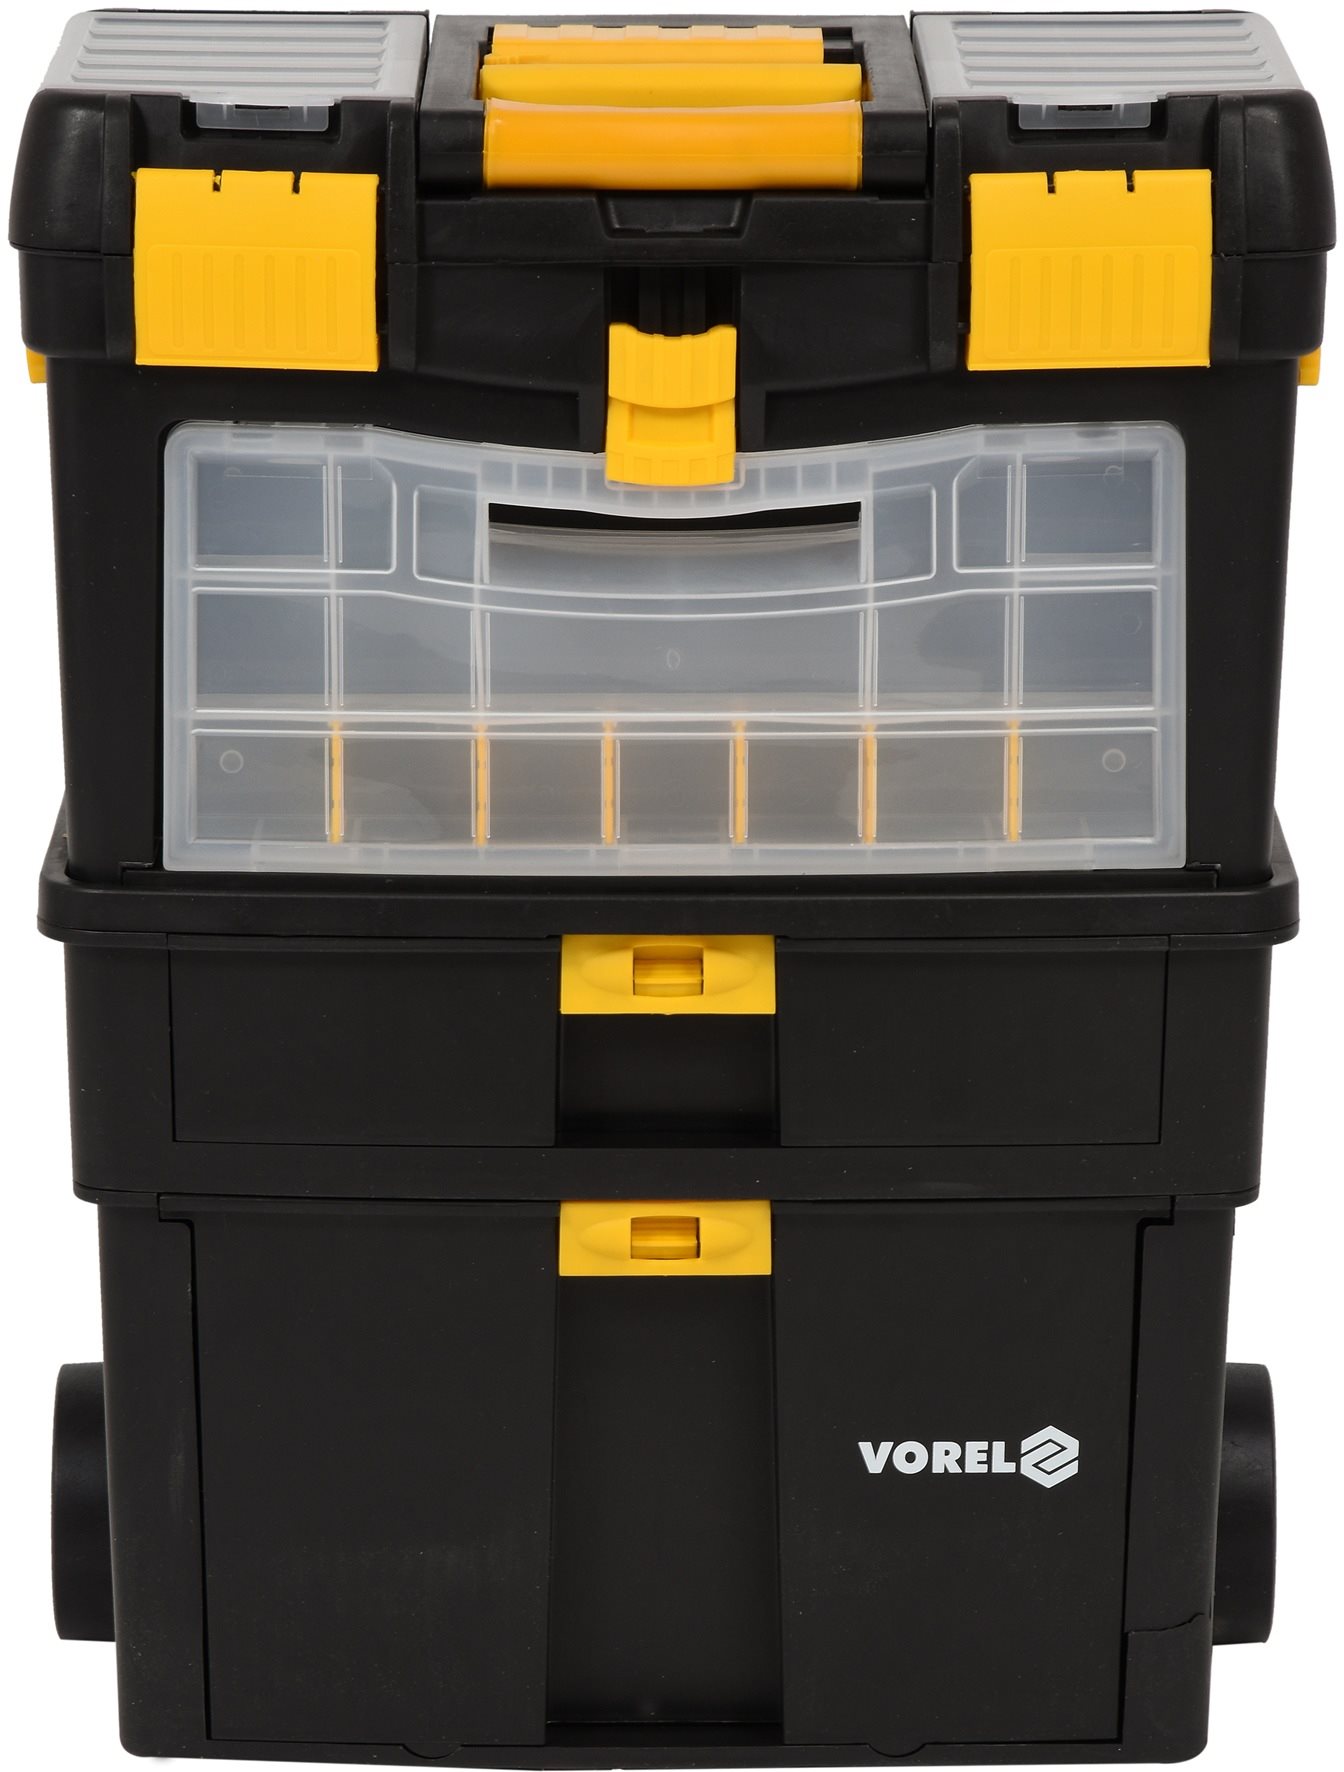 Vorel Mobile szerszámszekrény kivehető szervezővel